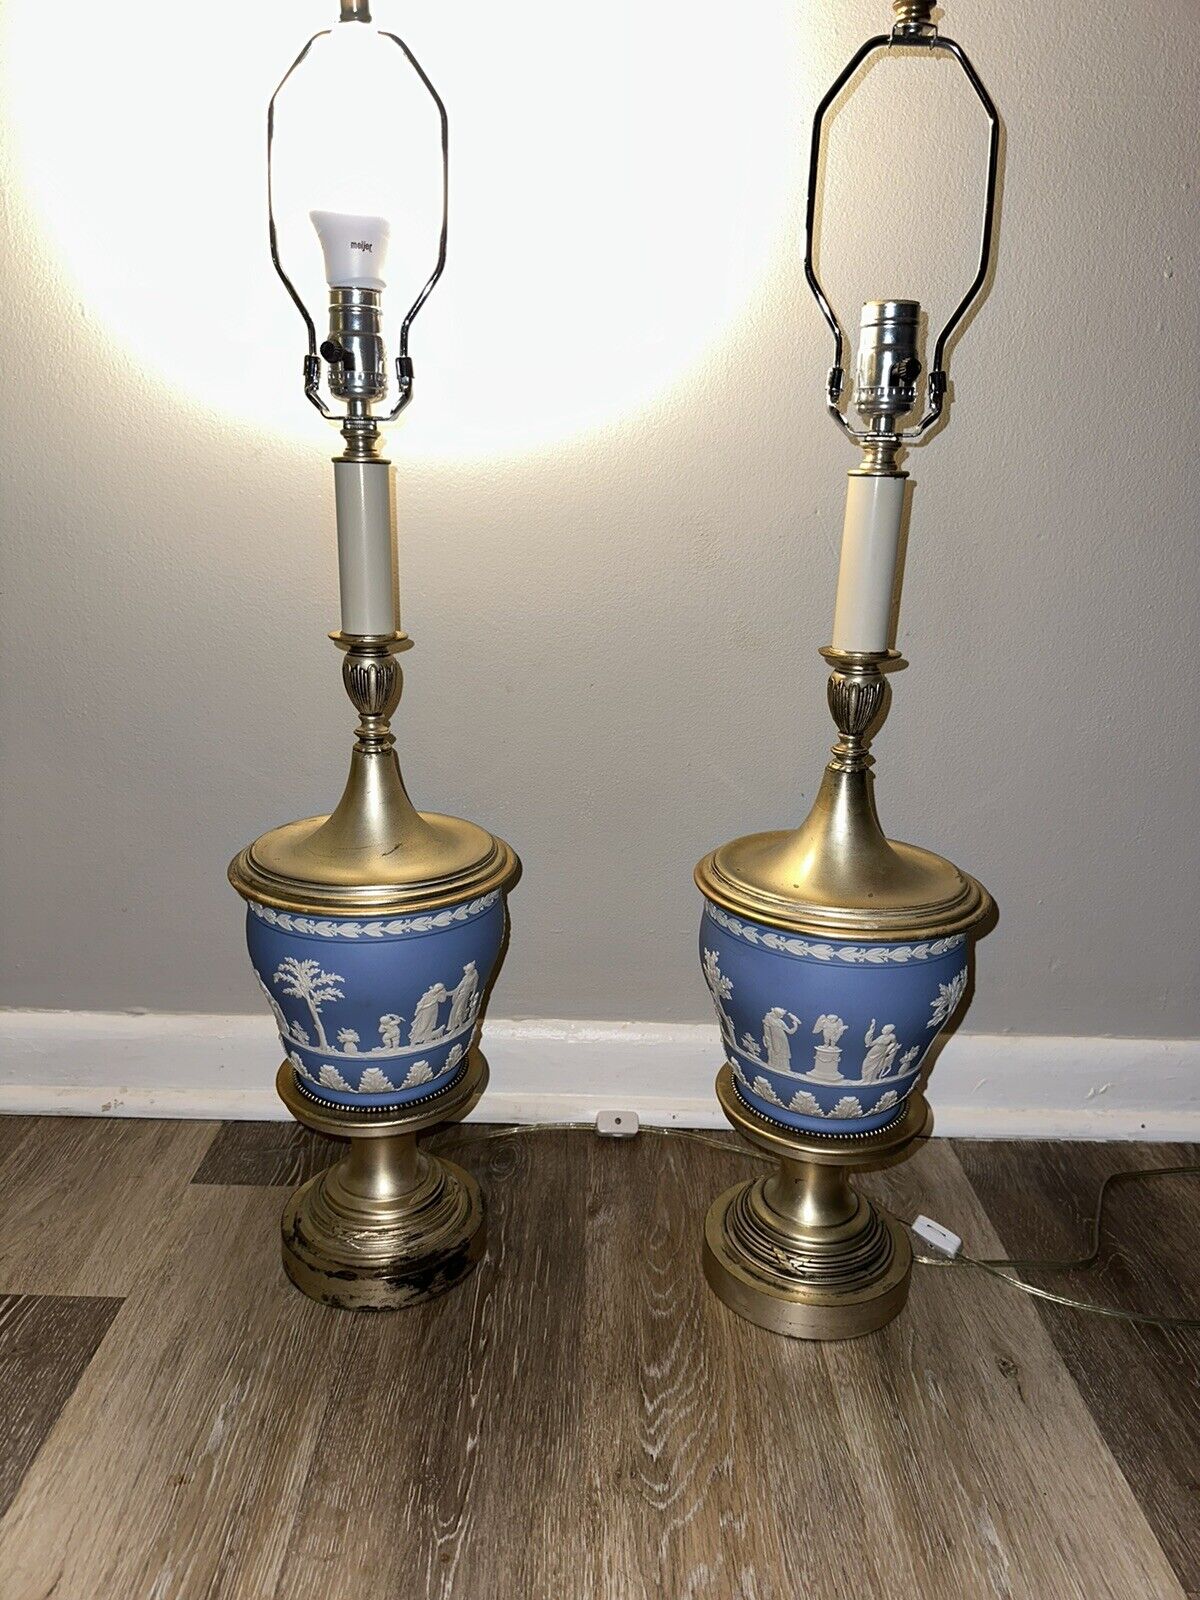 2 Vintage Pair Of Wedgewood Table Lamps Pale Jasper Blue